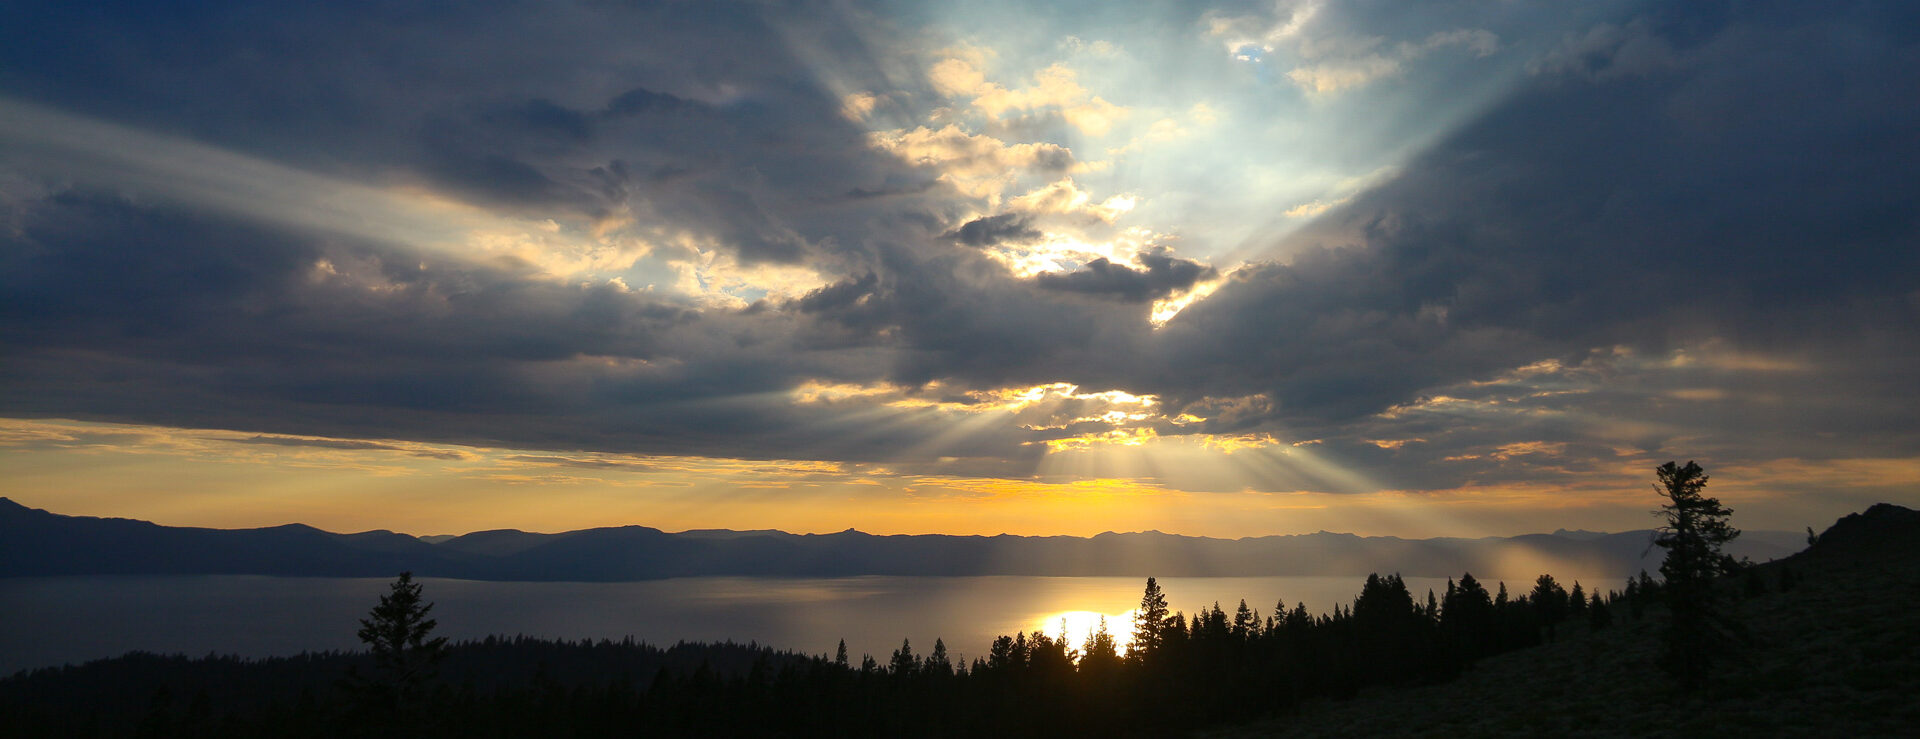 Effet de lumière dans les nuages au-dessus du lac Tahoe